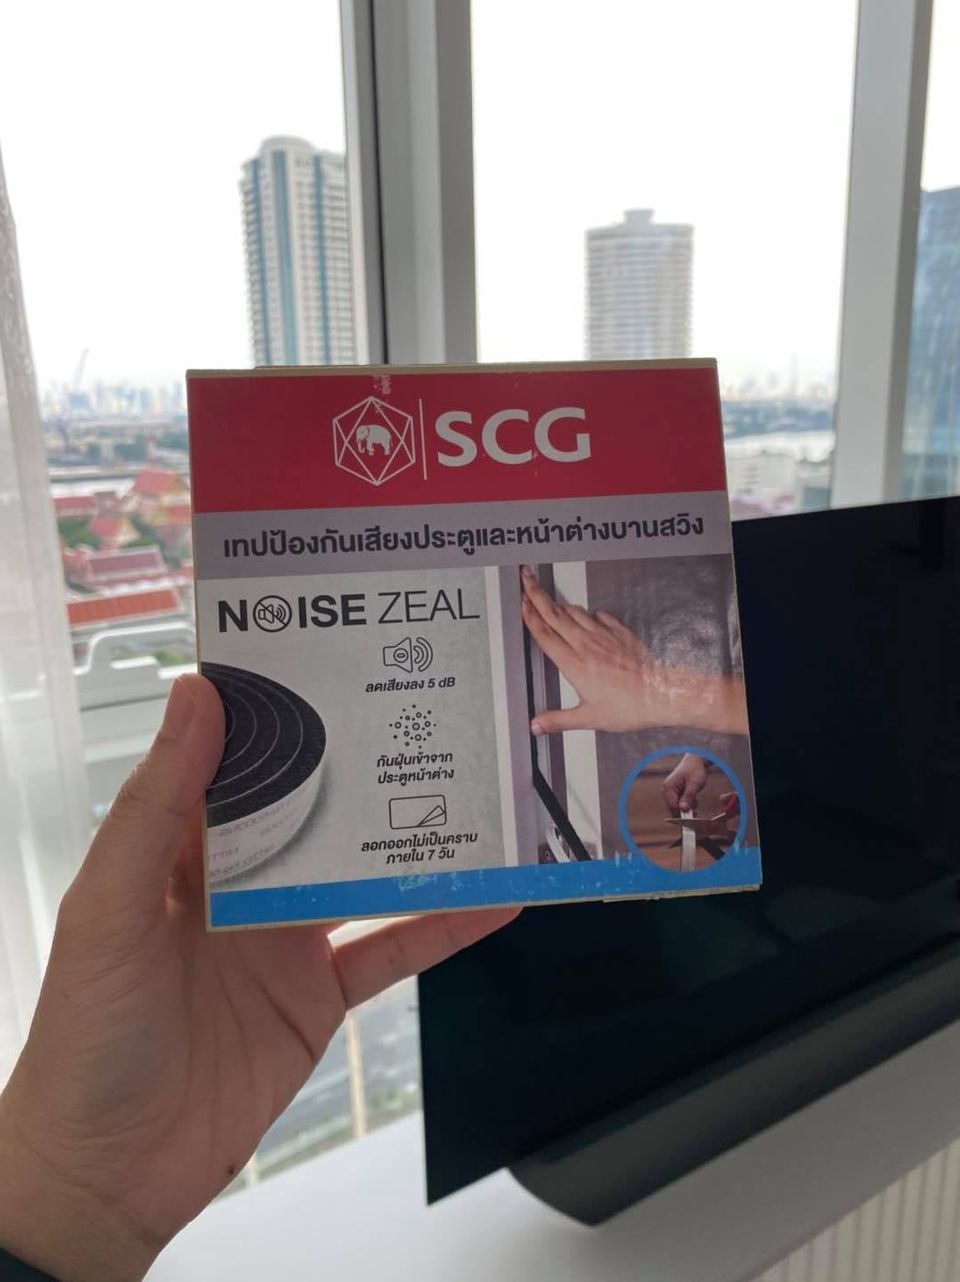 SCG Noise Zeal​